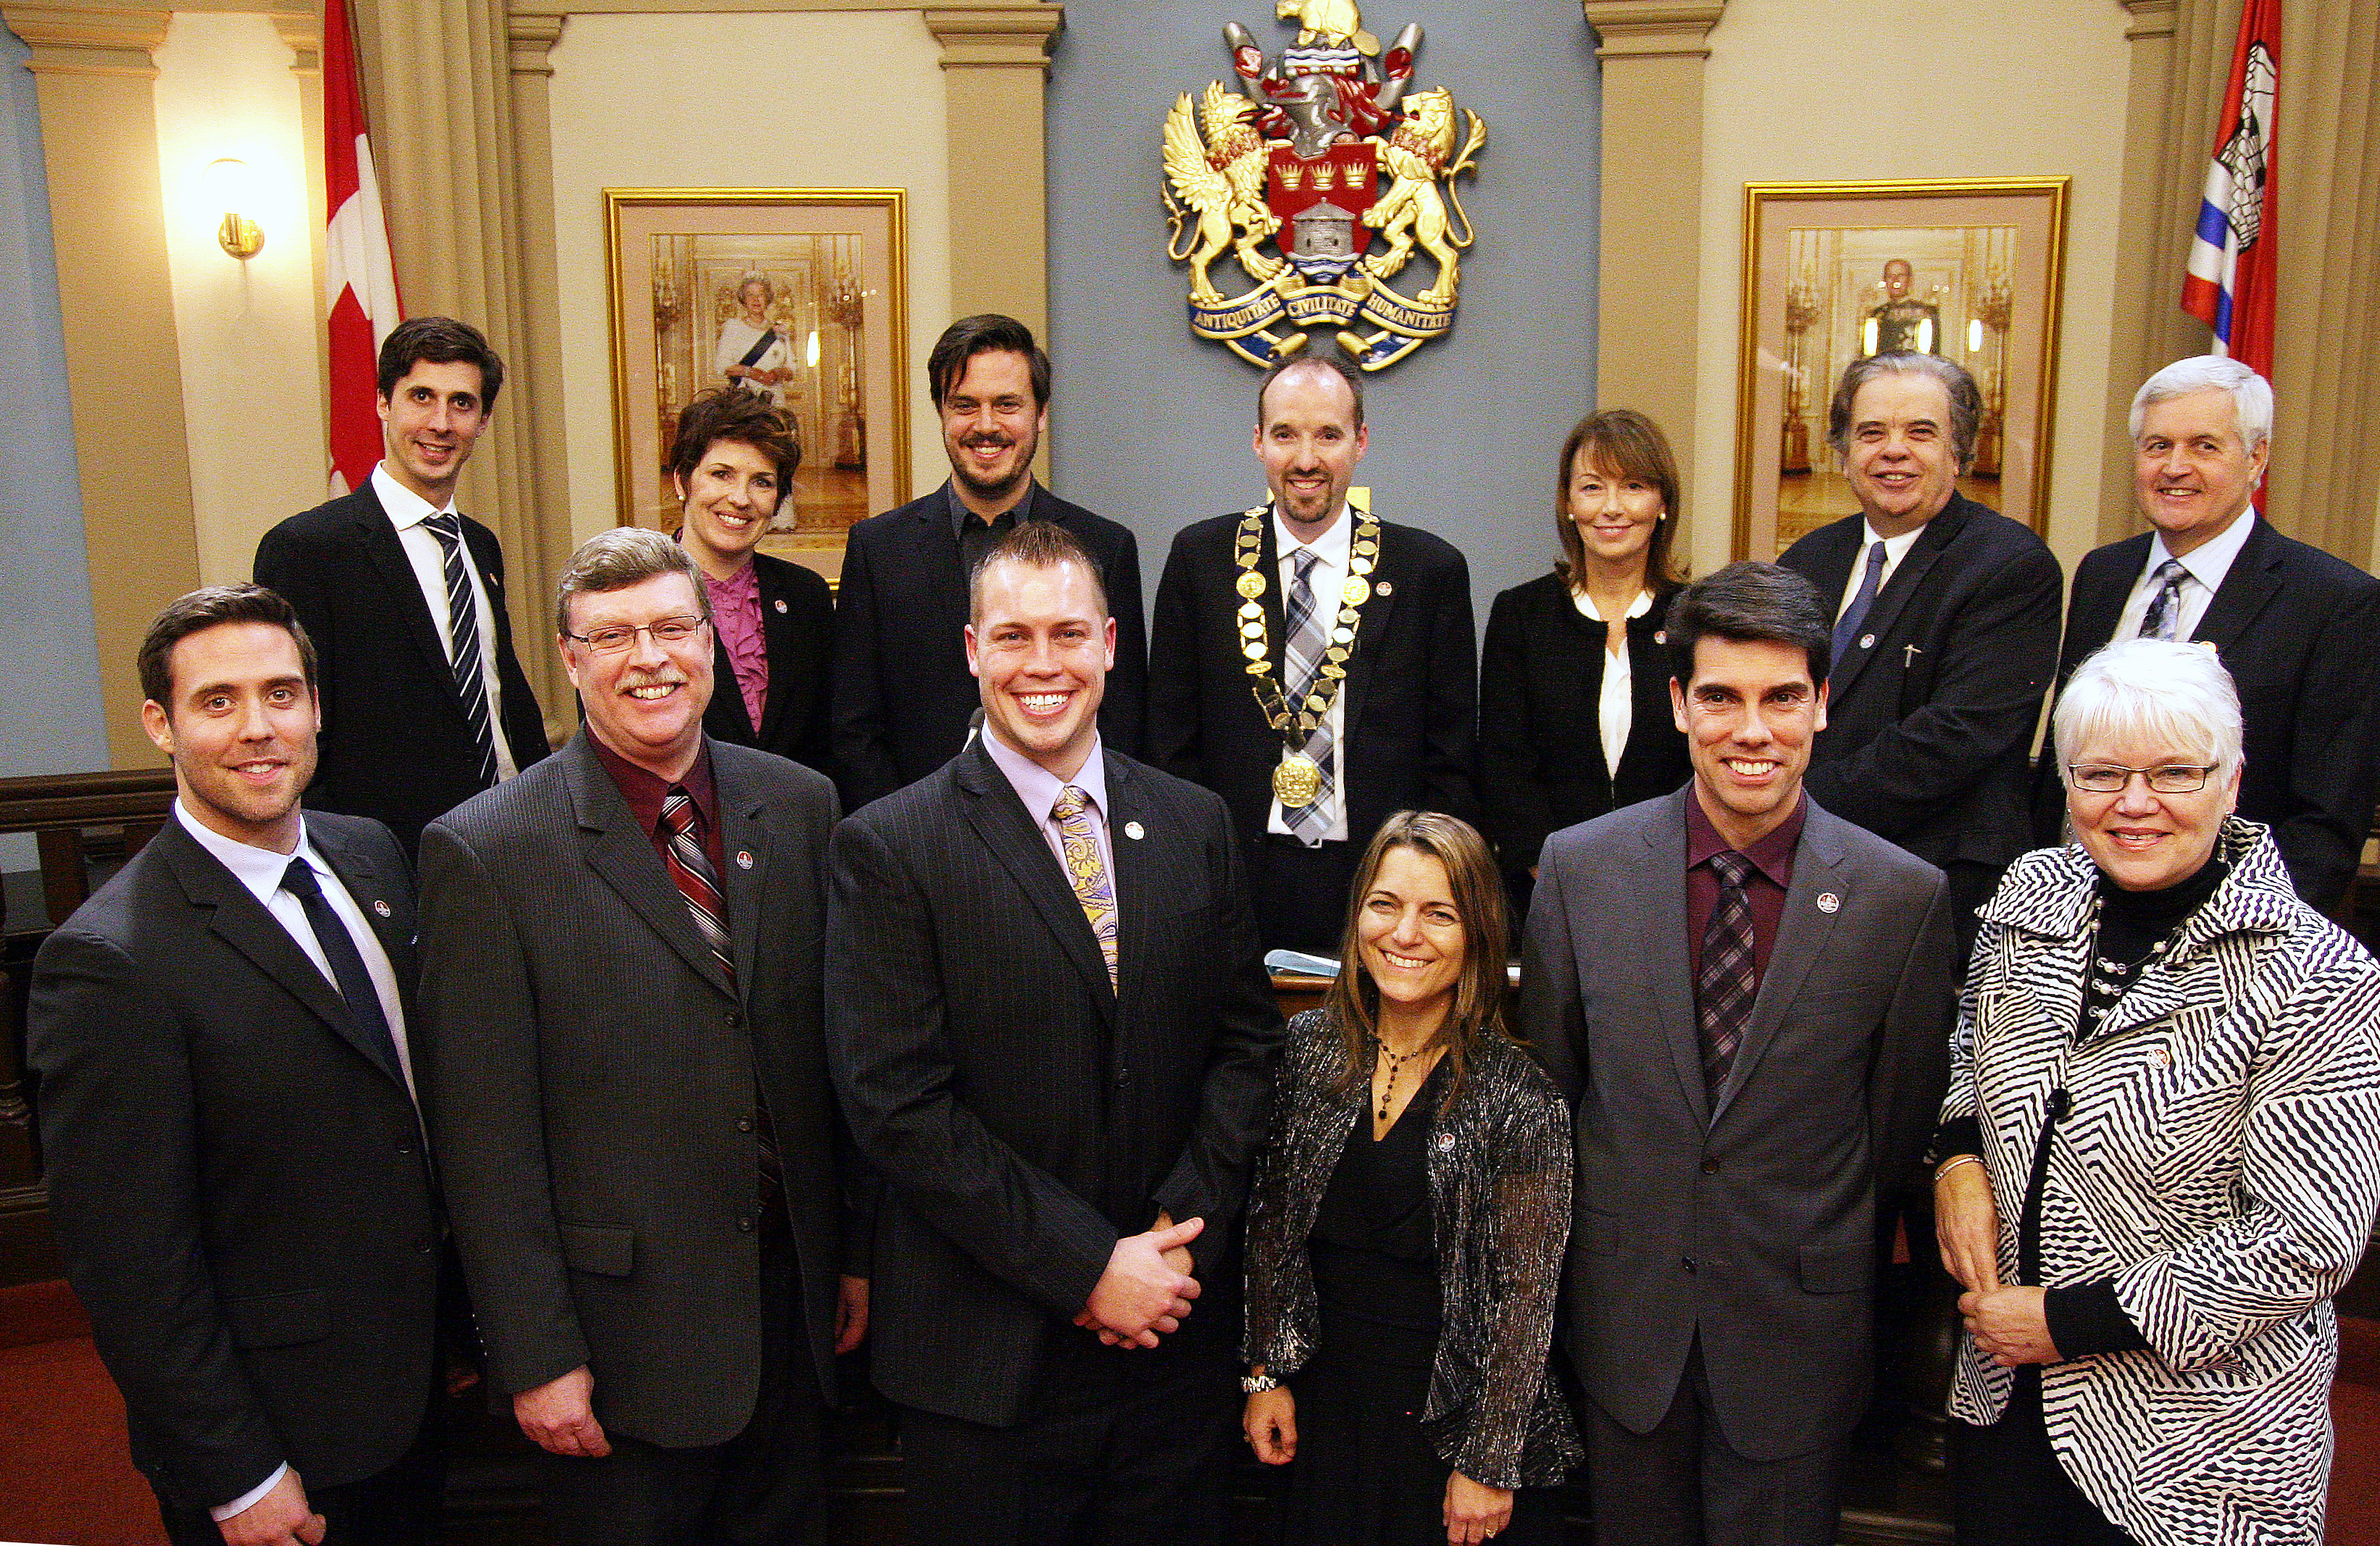 Council - group shot at inaugural council meeting - December 2 2014